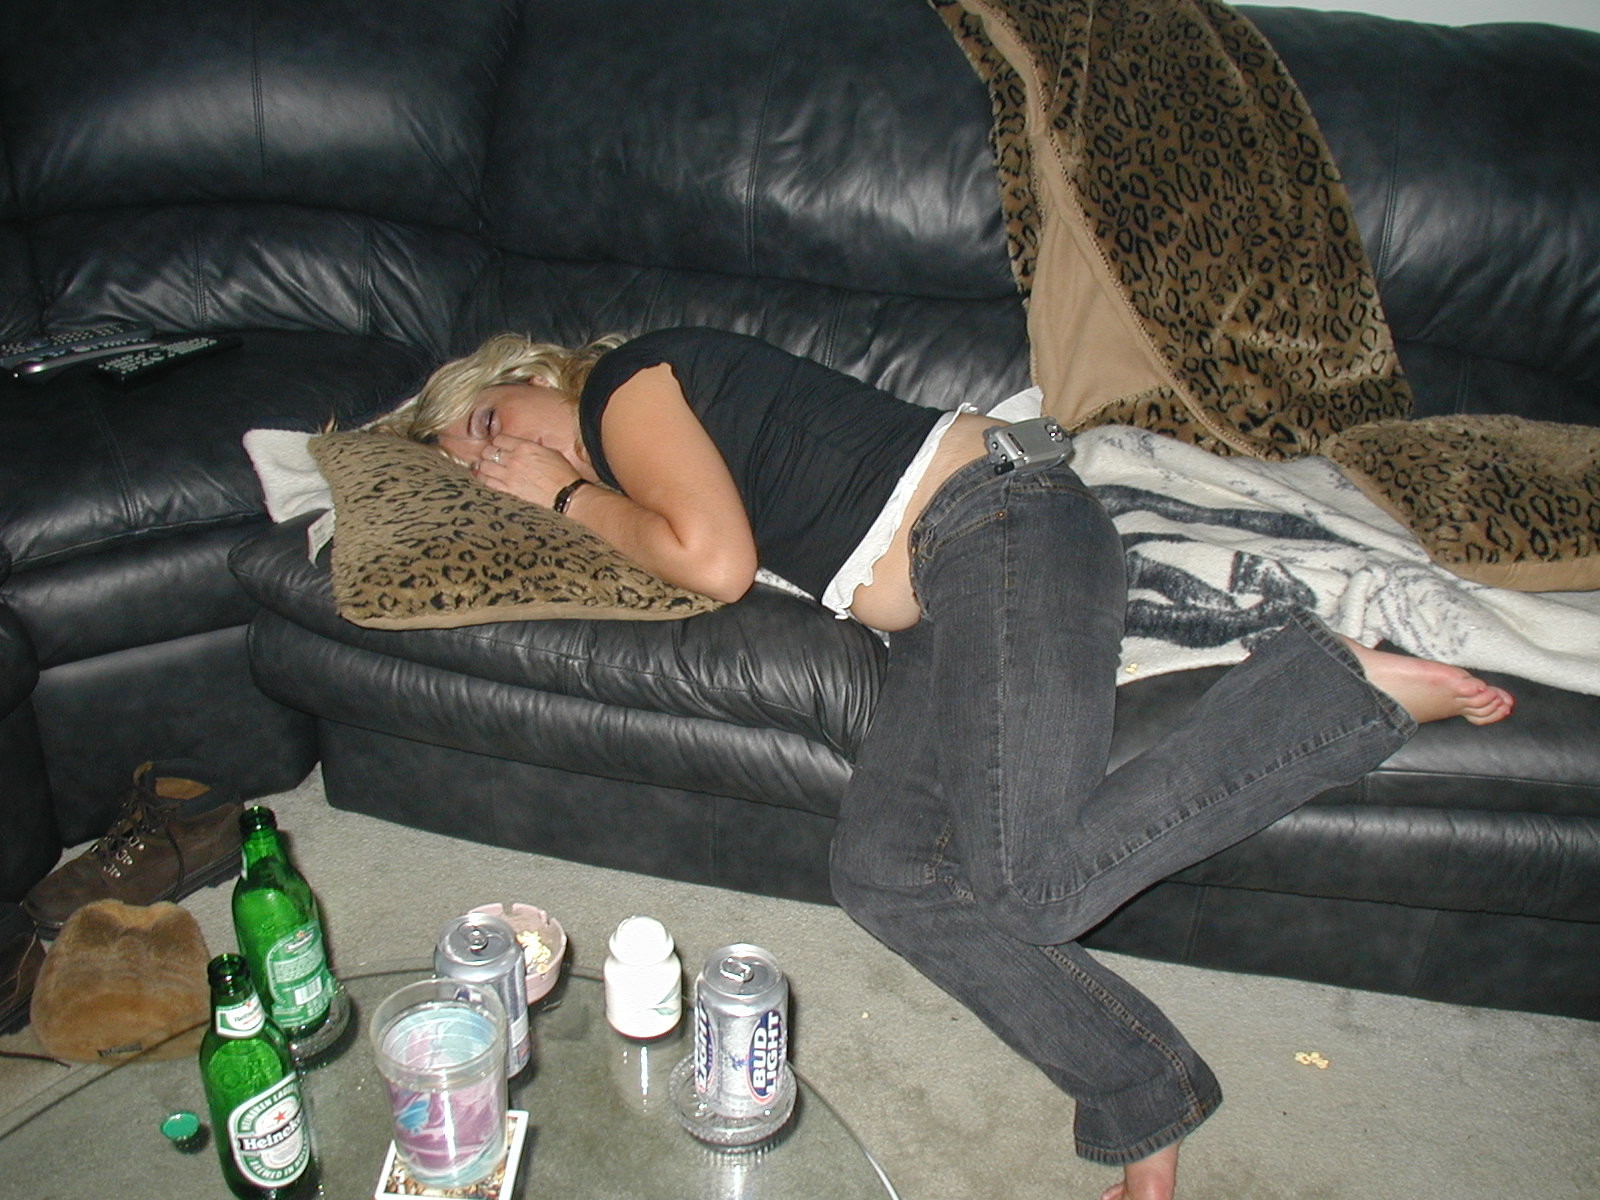 Измены спящих пьяных жен. Фото пьяных спящих девушек. Пьяные девушки в квартире. Домашнее фото пьяных женщин. Пьяные девки не хозяйки.